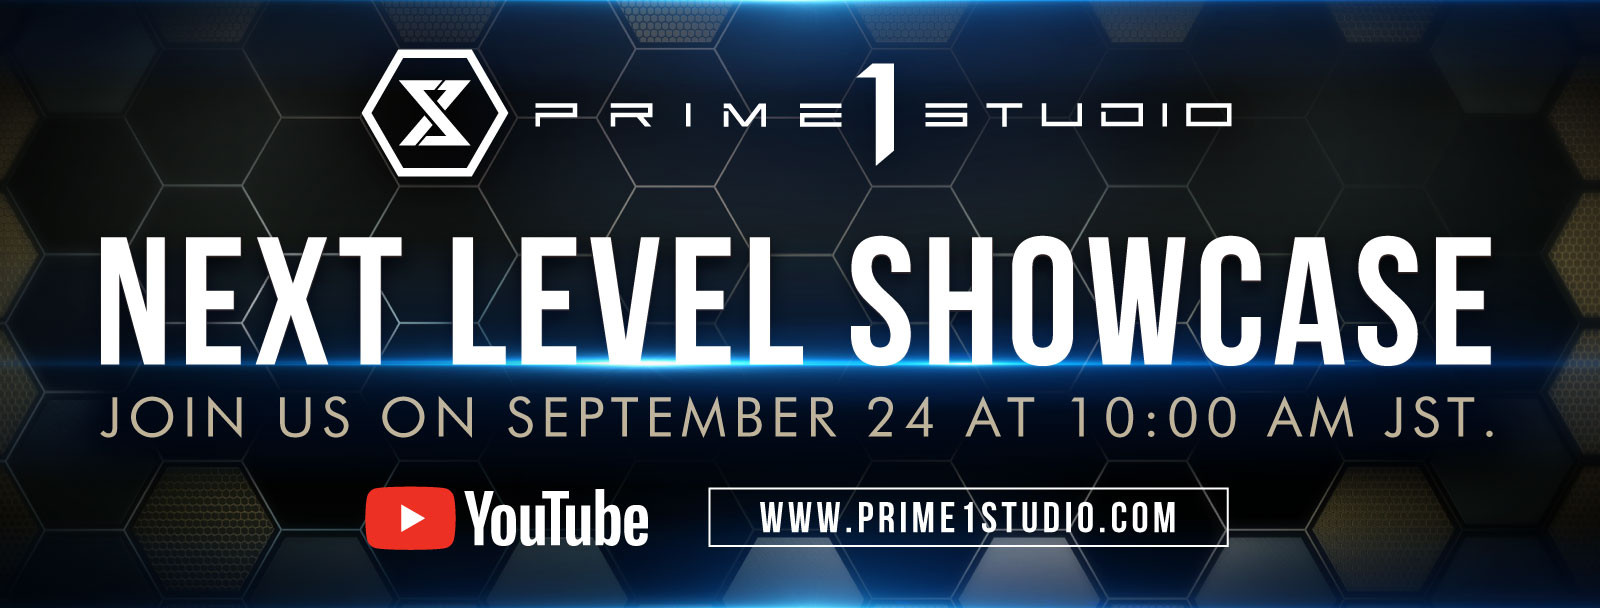 Next Level Showcase 1 Announcement image